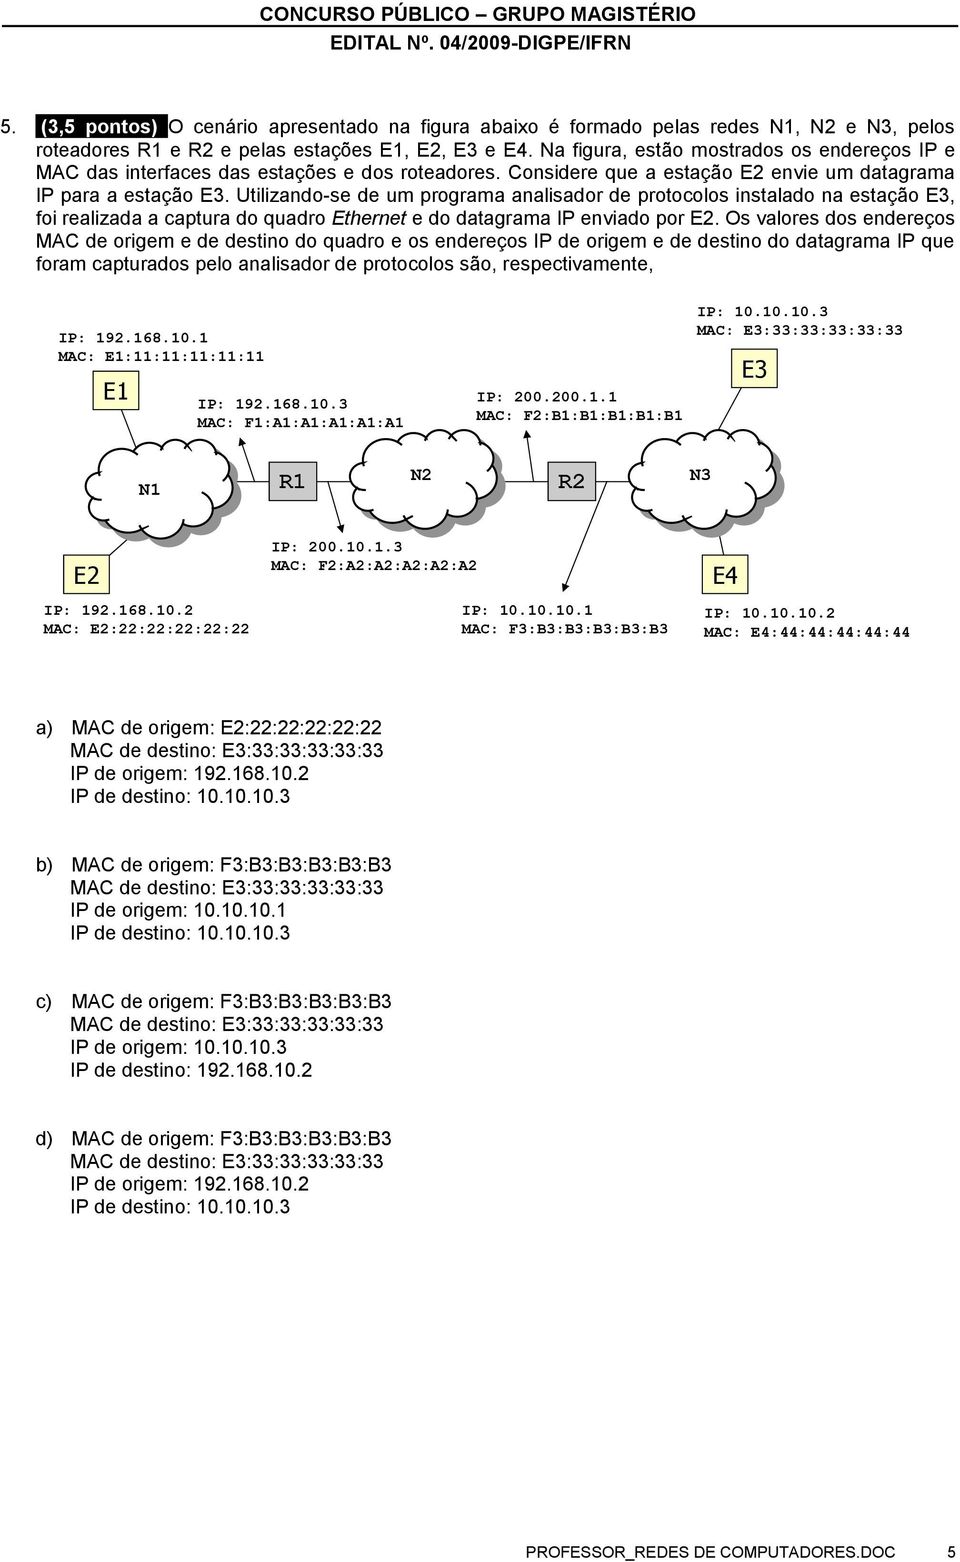 Utilizando-se de um programa analisador de protocolos instalado na estação E3, foi realizada a captura do quadro Ethernet e do datagrama IP enviado por E2.